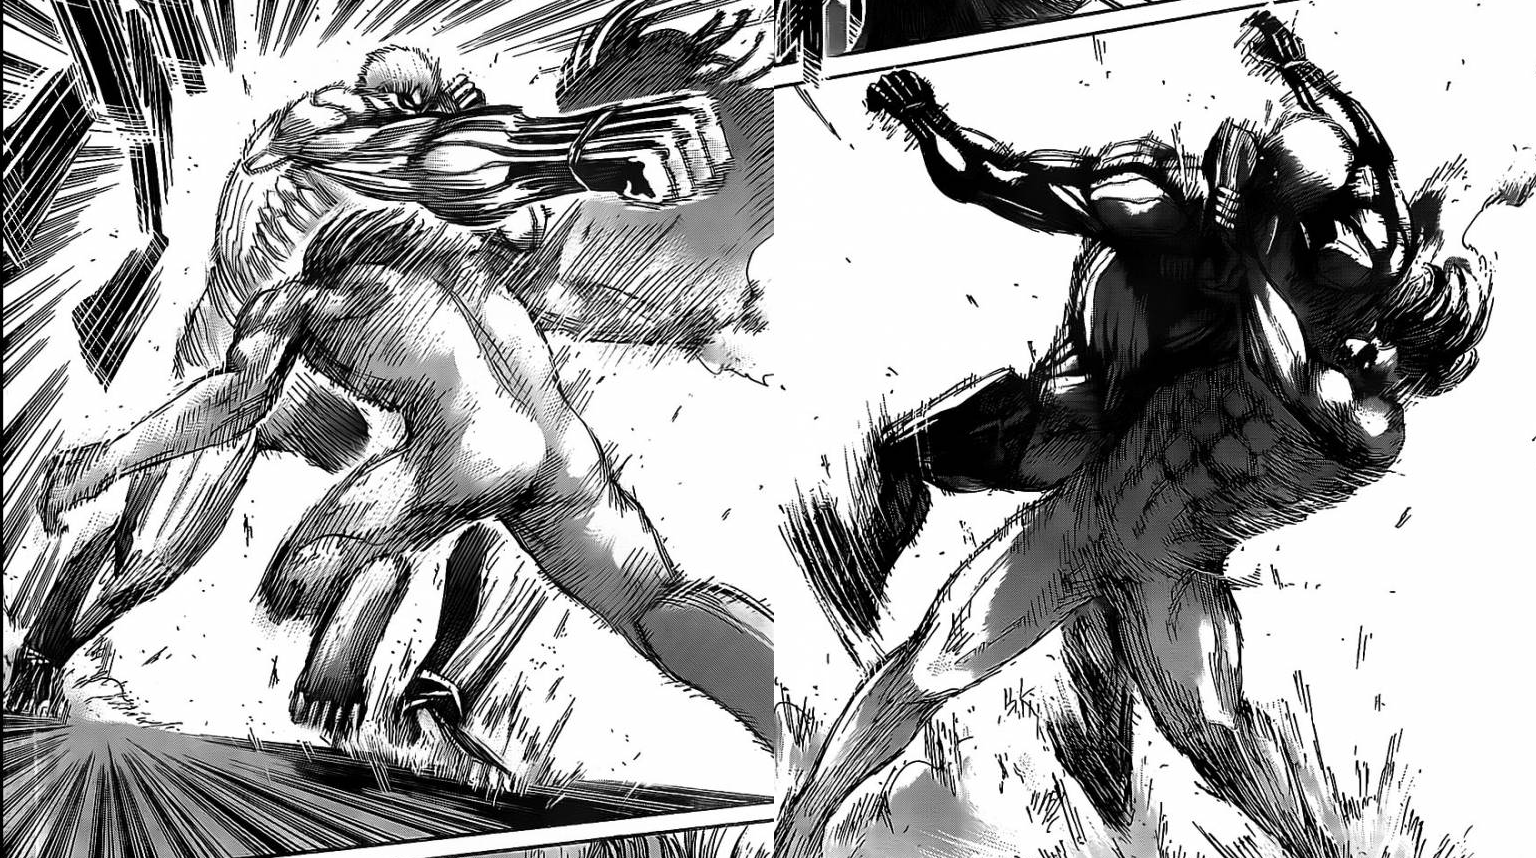 Attack on Titan: All Reiner versus Eren fights so far